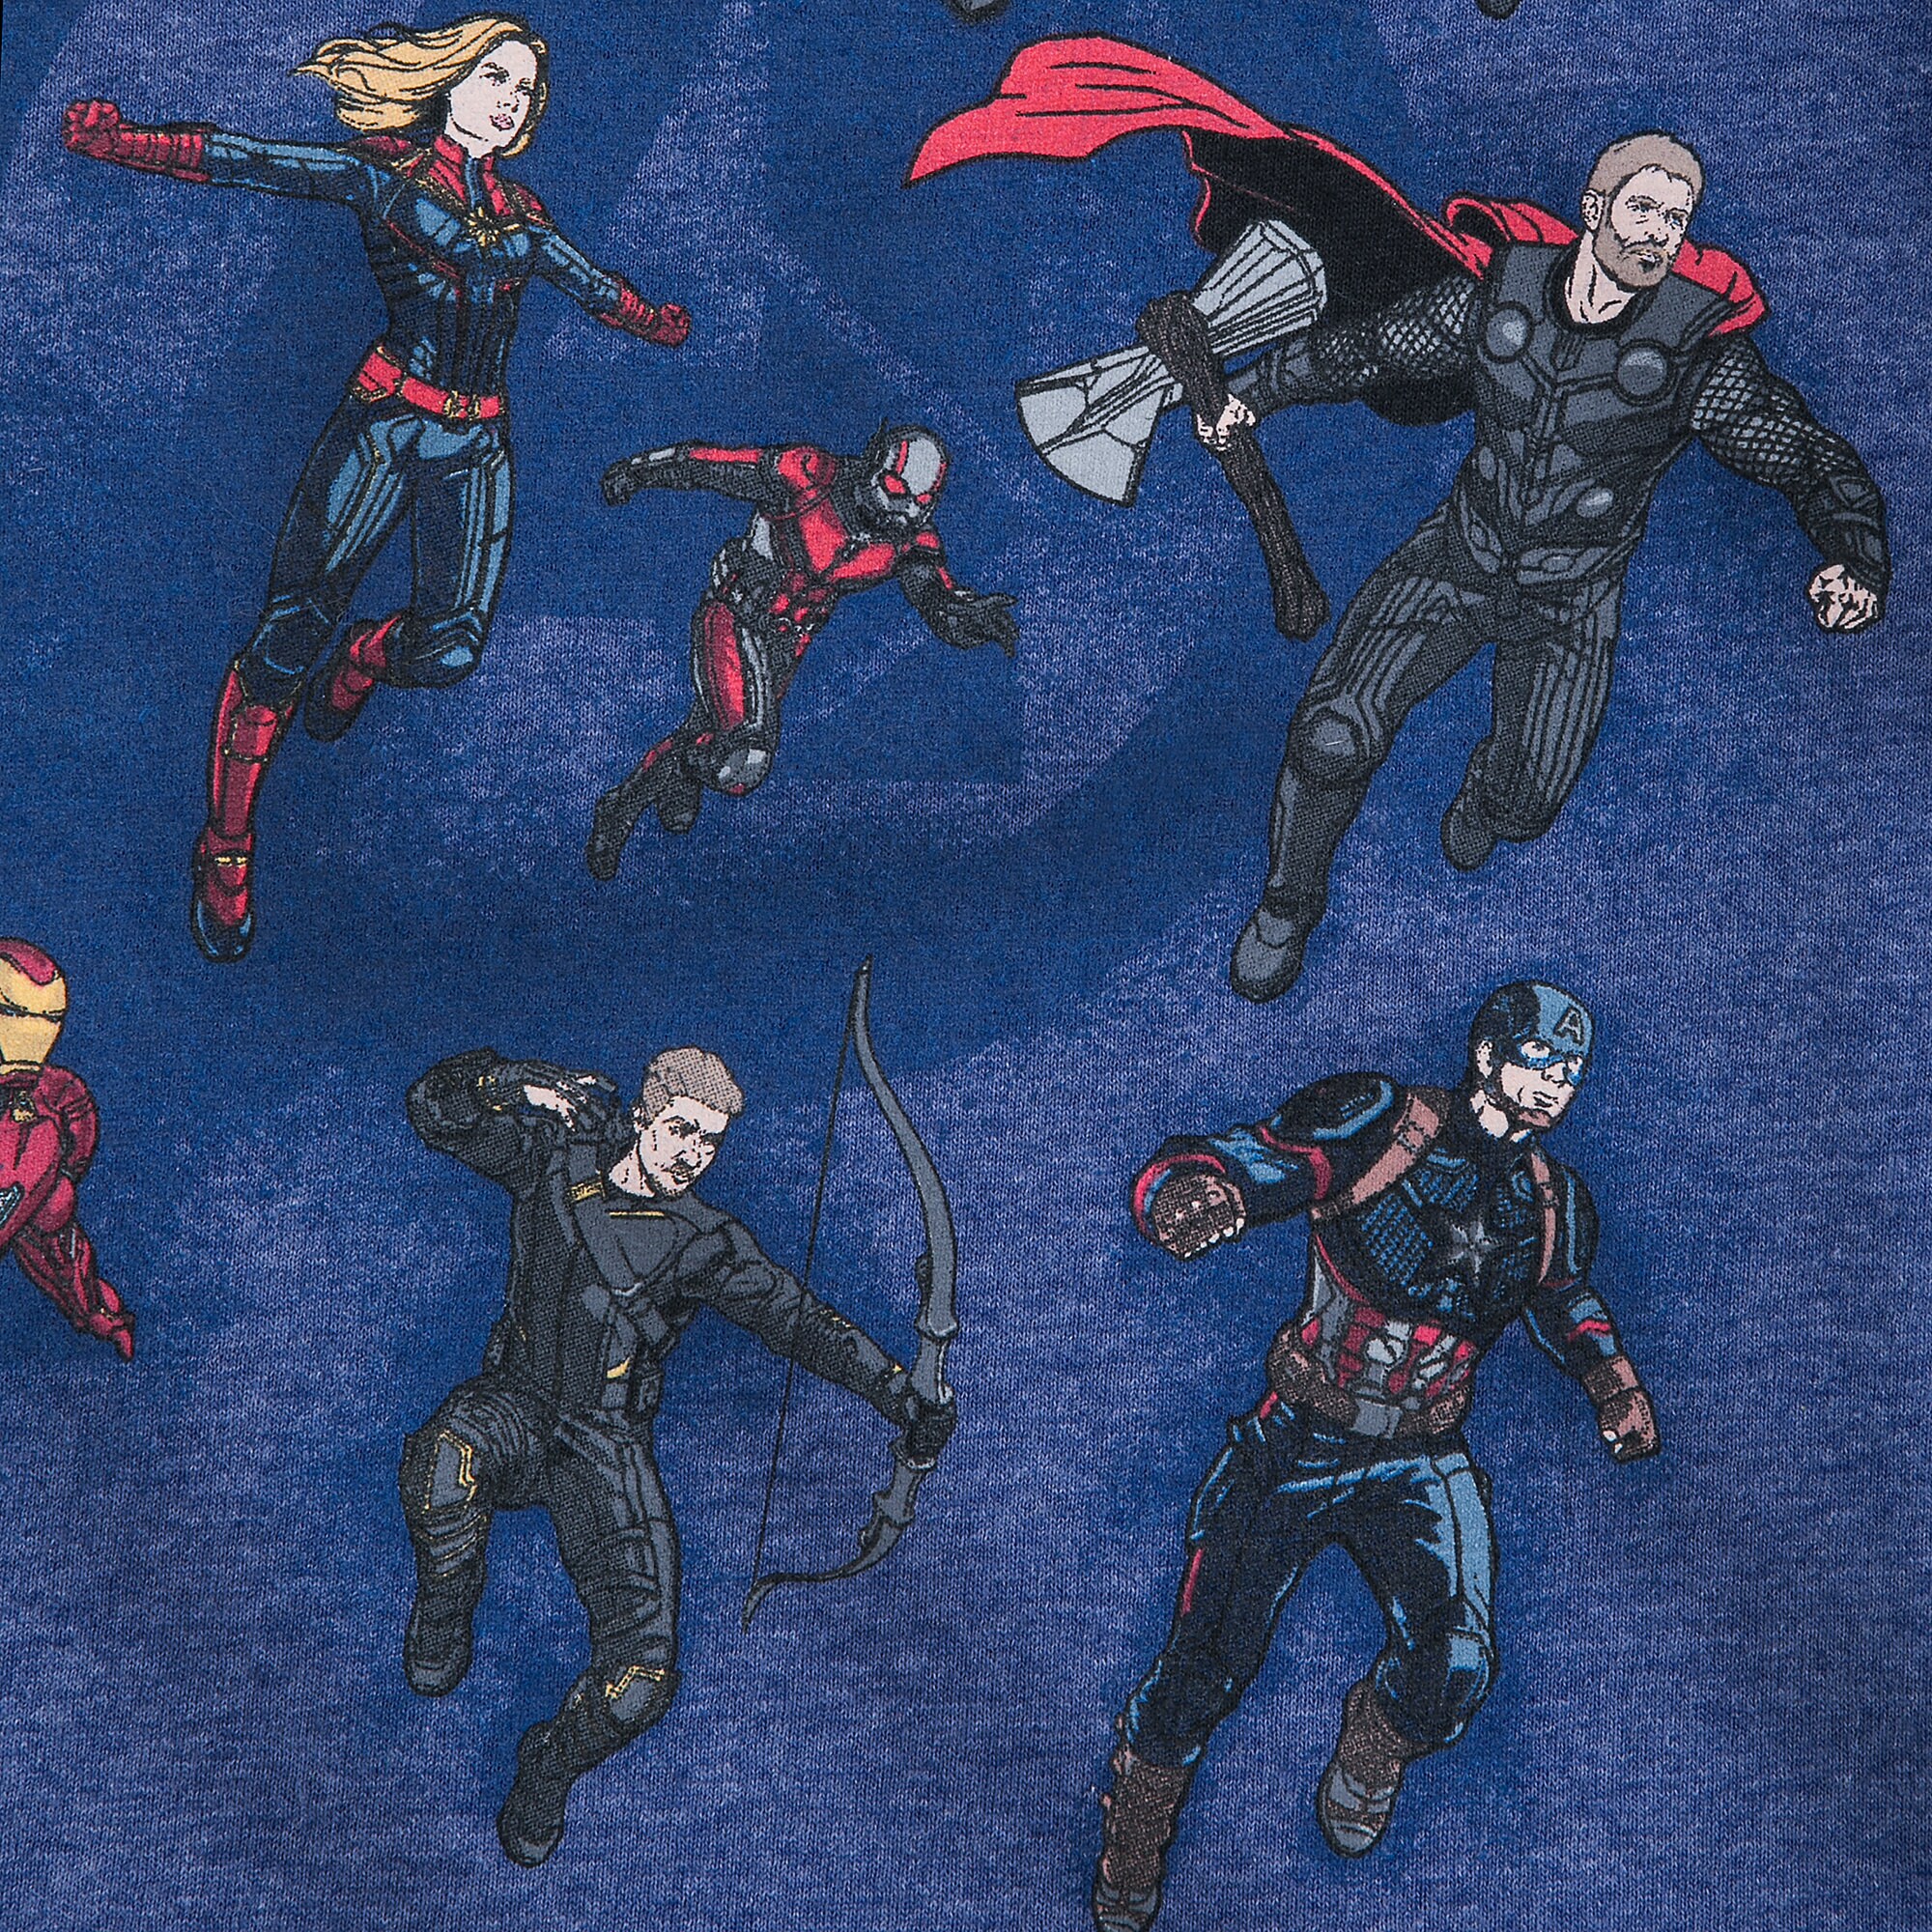 Marvel's Avengers: Endgame Cast T-Shirt for Boys